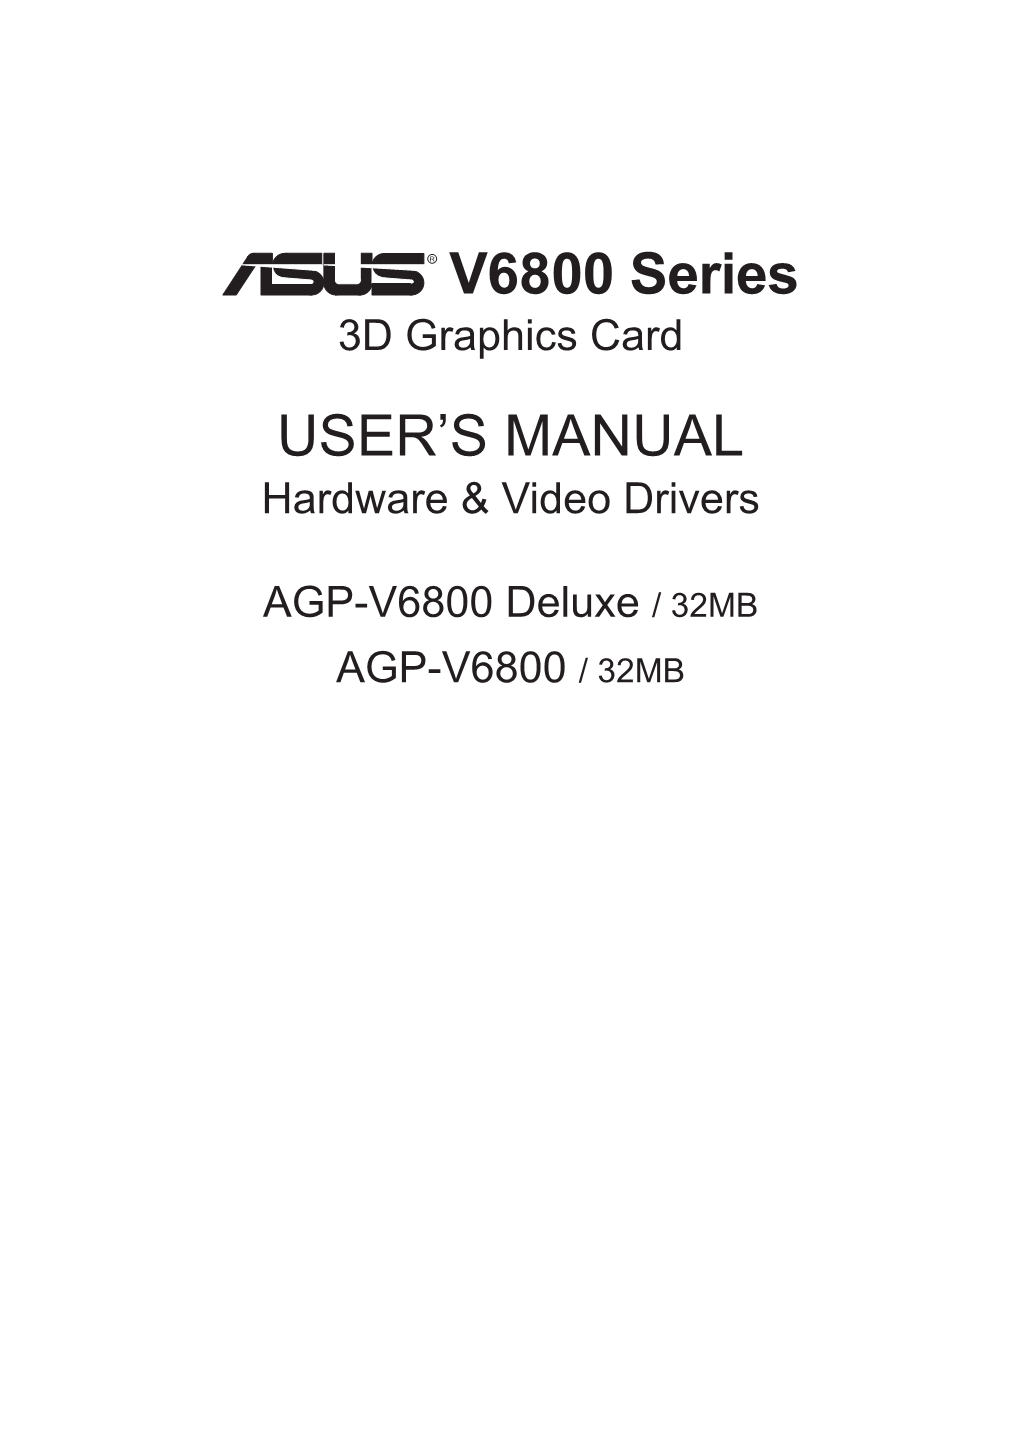 ASUS AGP-V6800 Series User's Manual